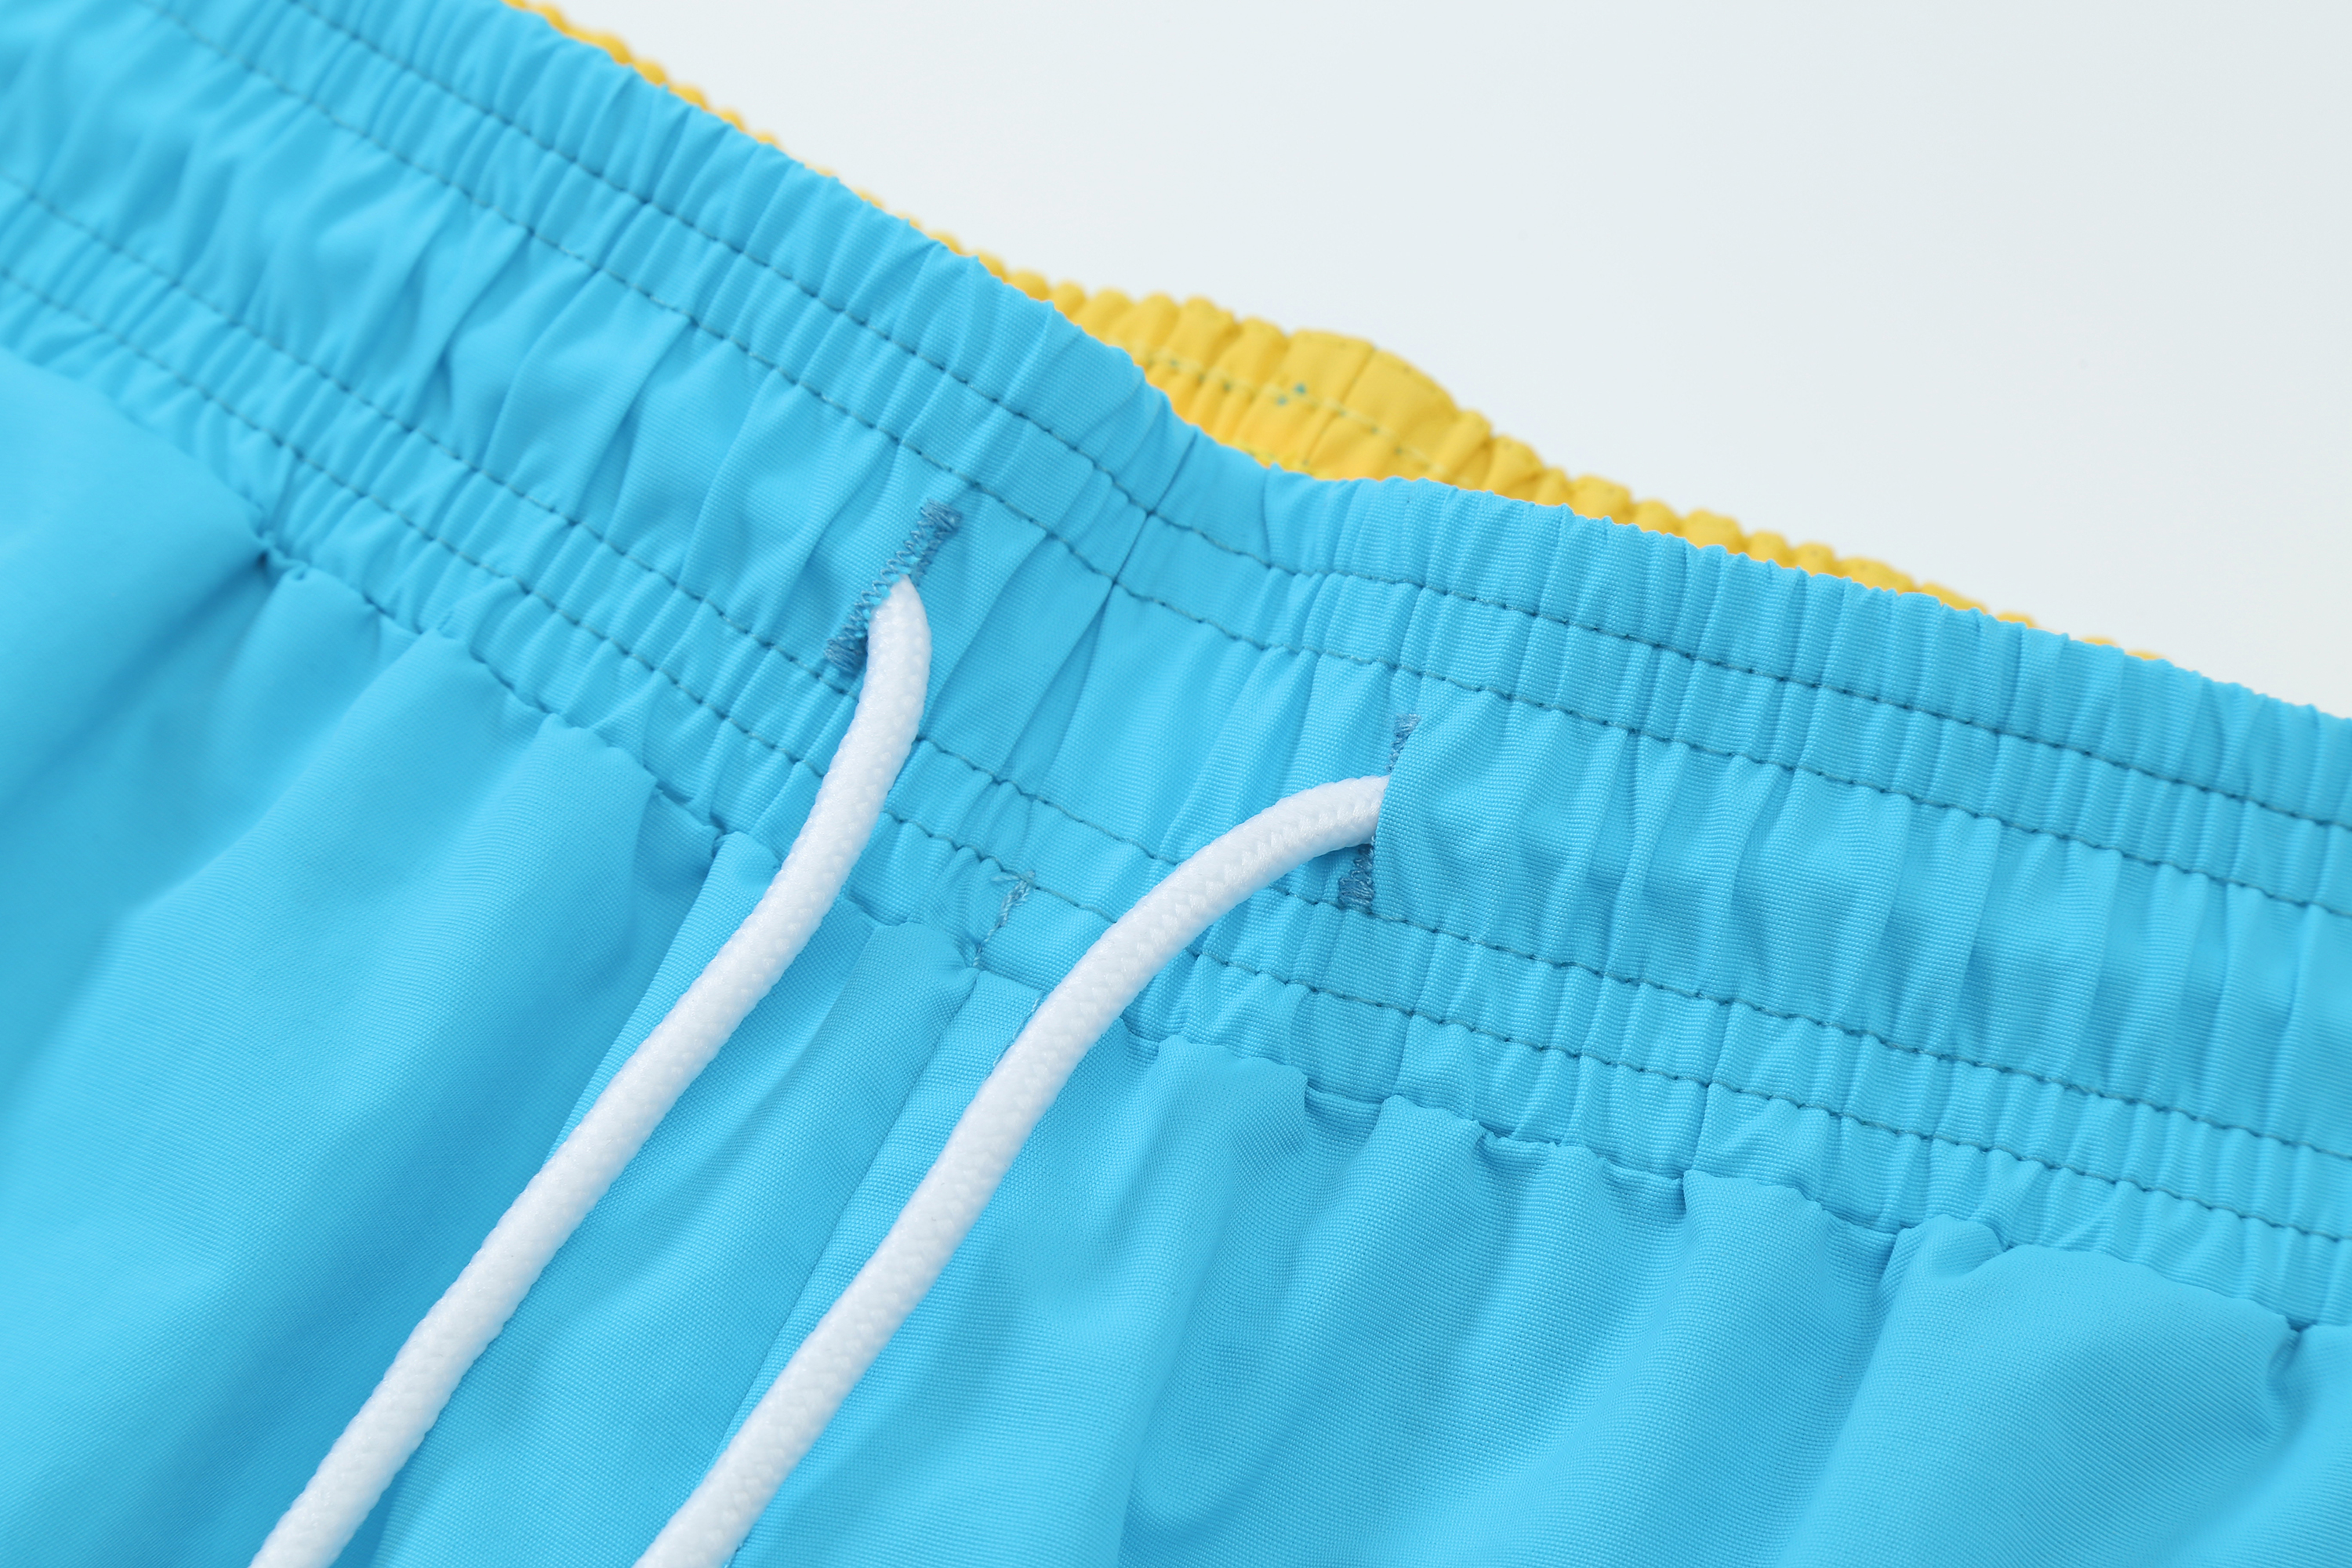 Летние модные шорты мужская поло новая дизайнерская доска короткая быстрая сушка для купальников печать пляжные брюки плавать шорты размером m-3xl